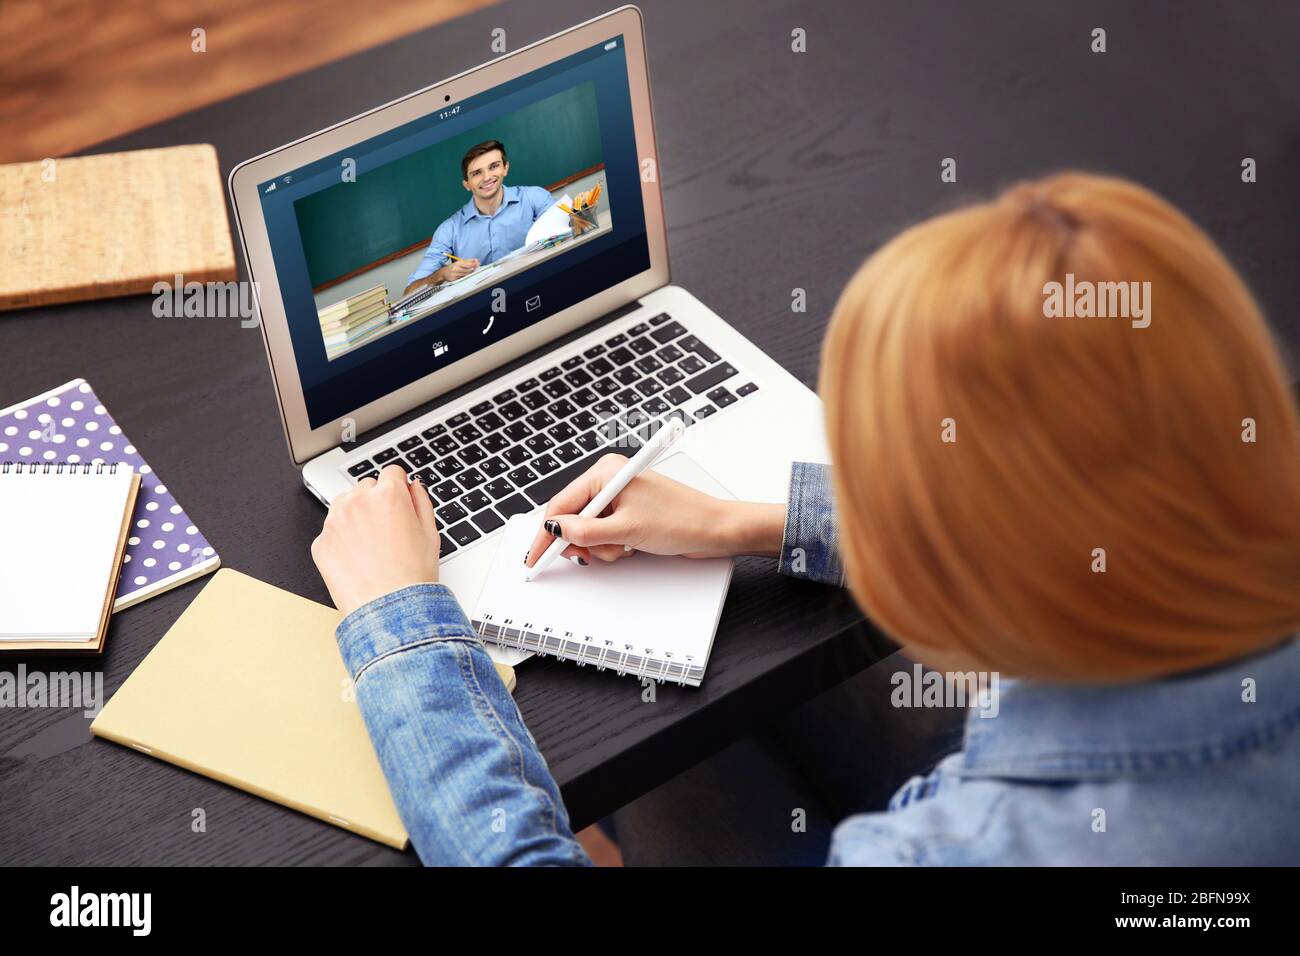 Une visioconférence avec tuteur sur ordinateur portable à la maison. Concept de formation à distance. Banque D'Images